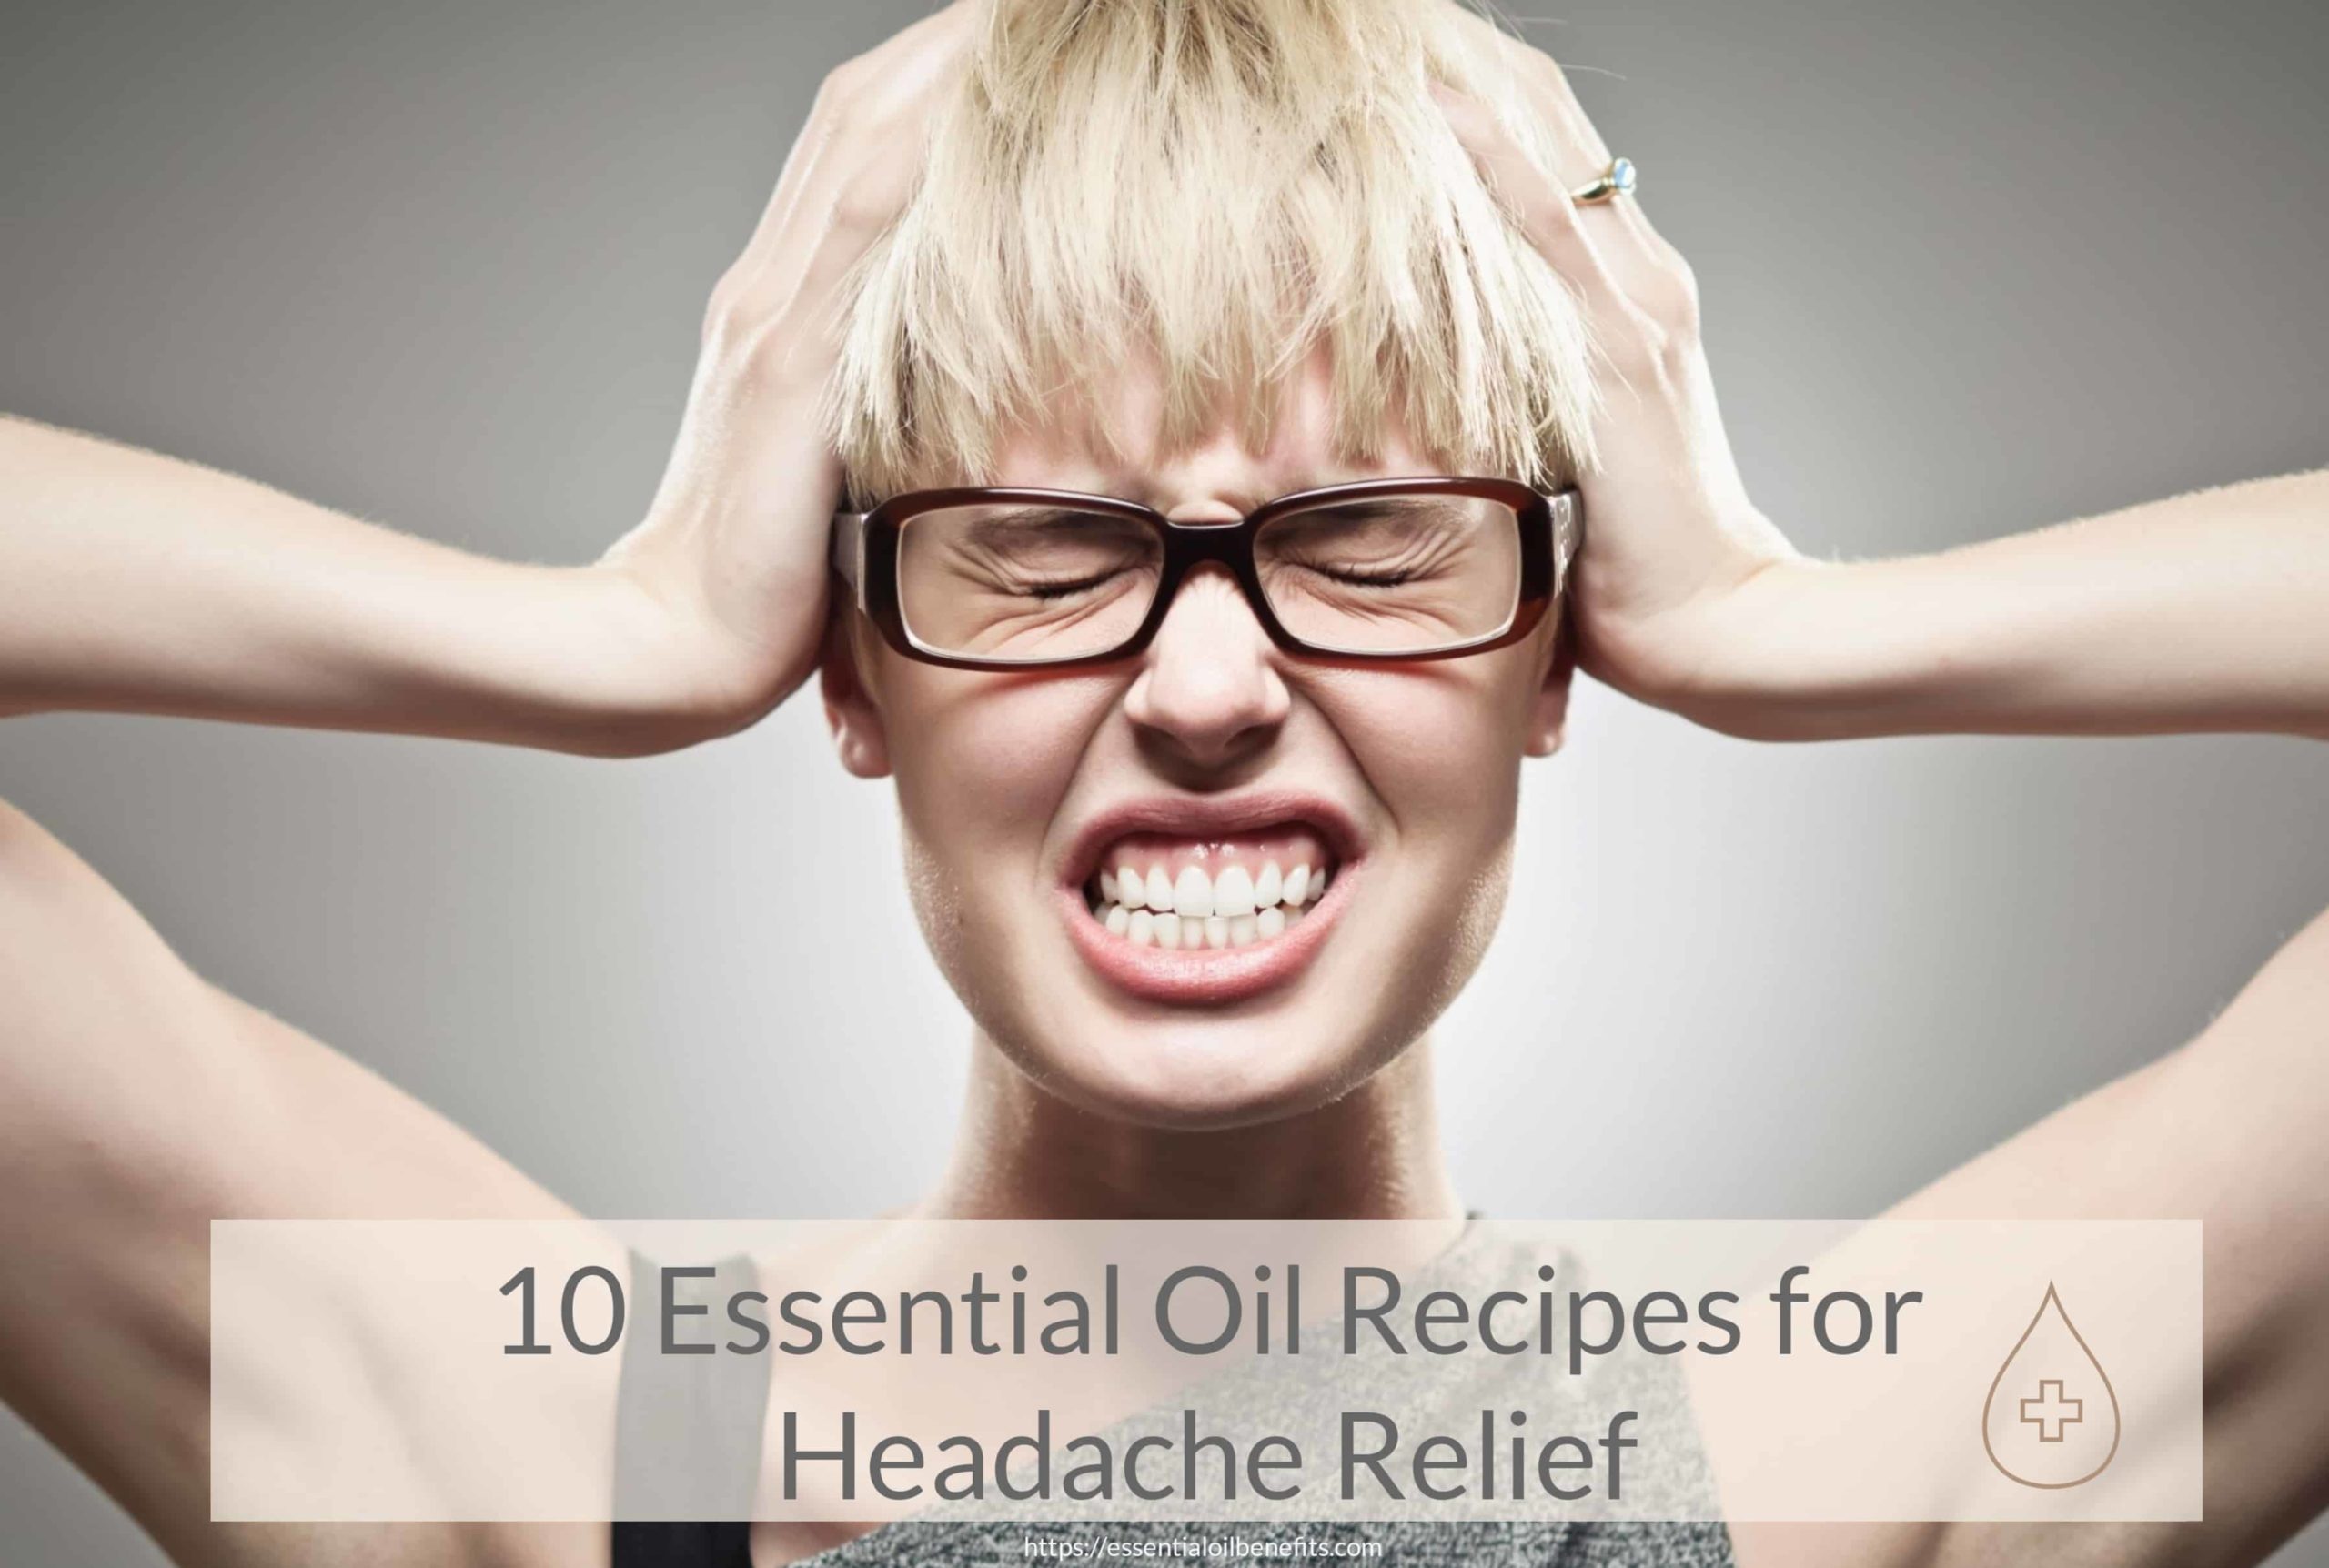 Quelles sont les meilleures recettes d’huiles essentielles pour soulager un mal de tête?